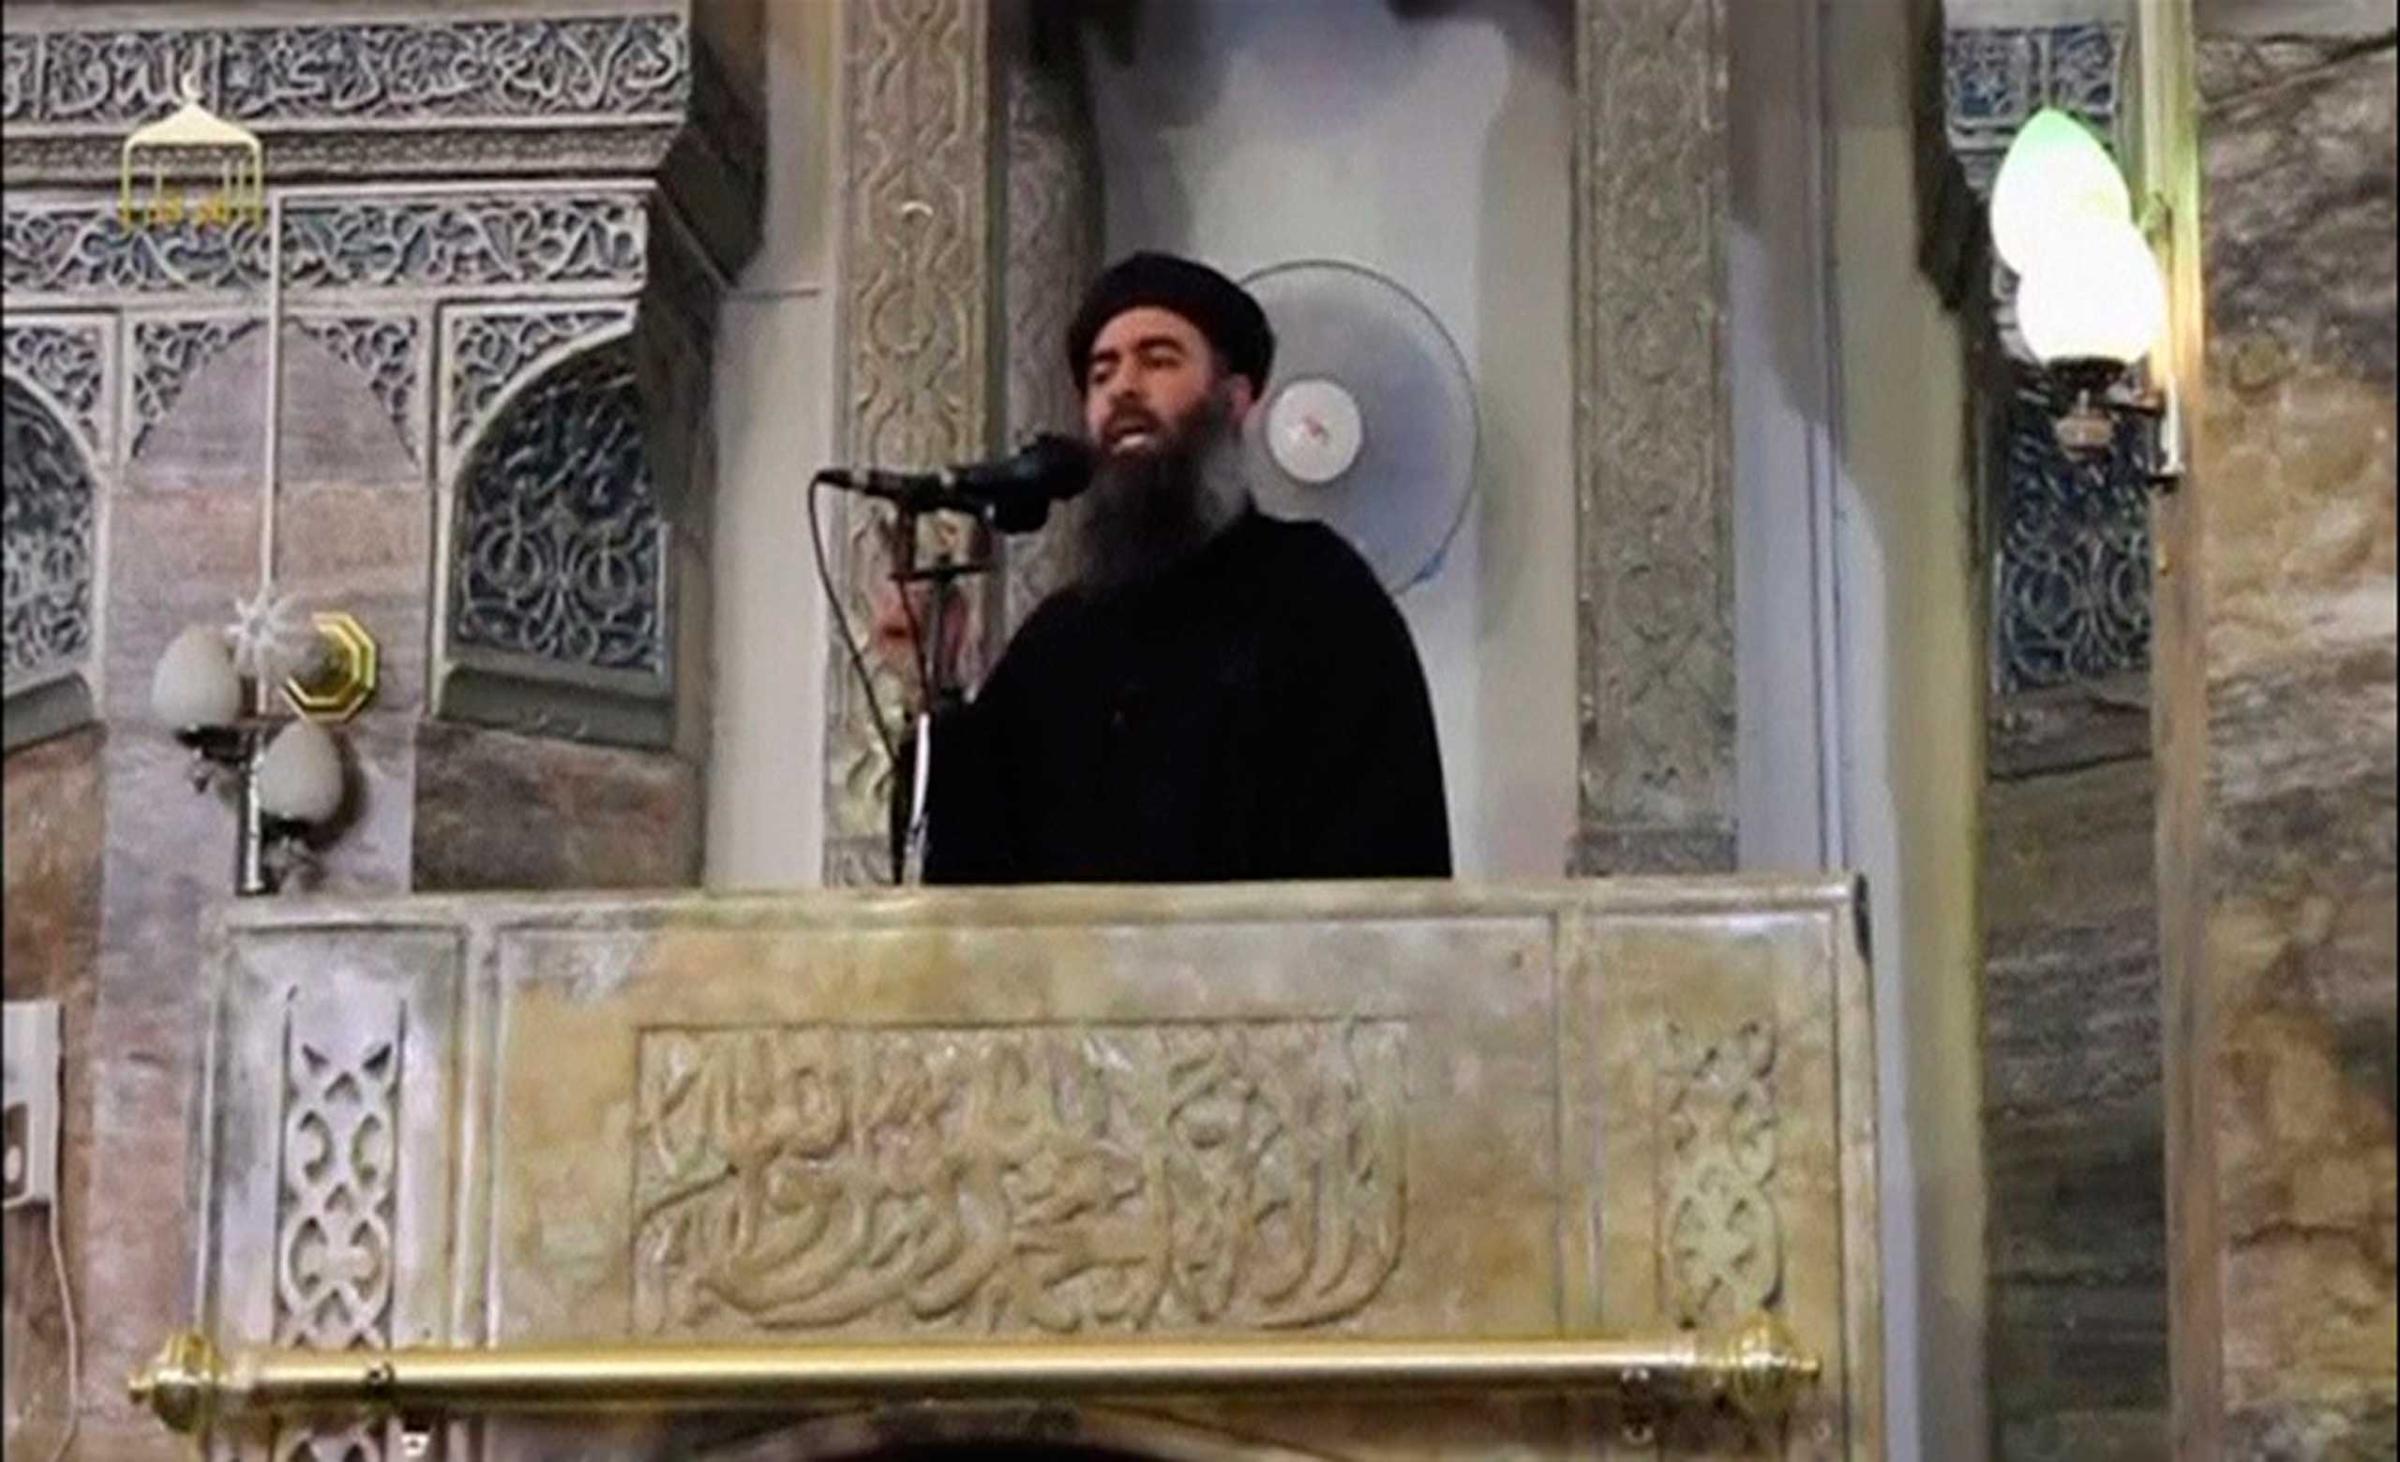 Terrorists Abu Bakr al-Baghdadi